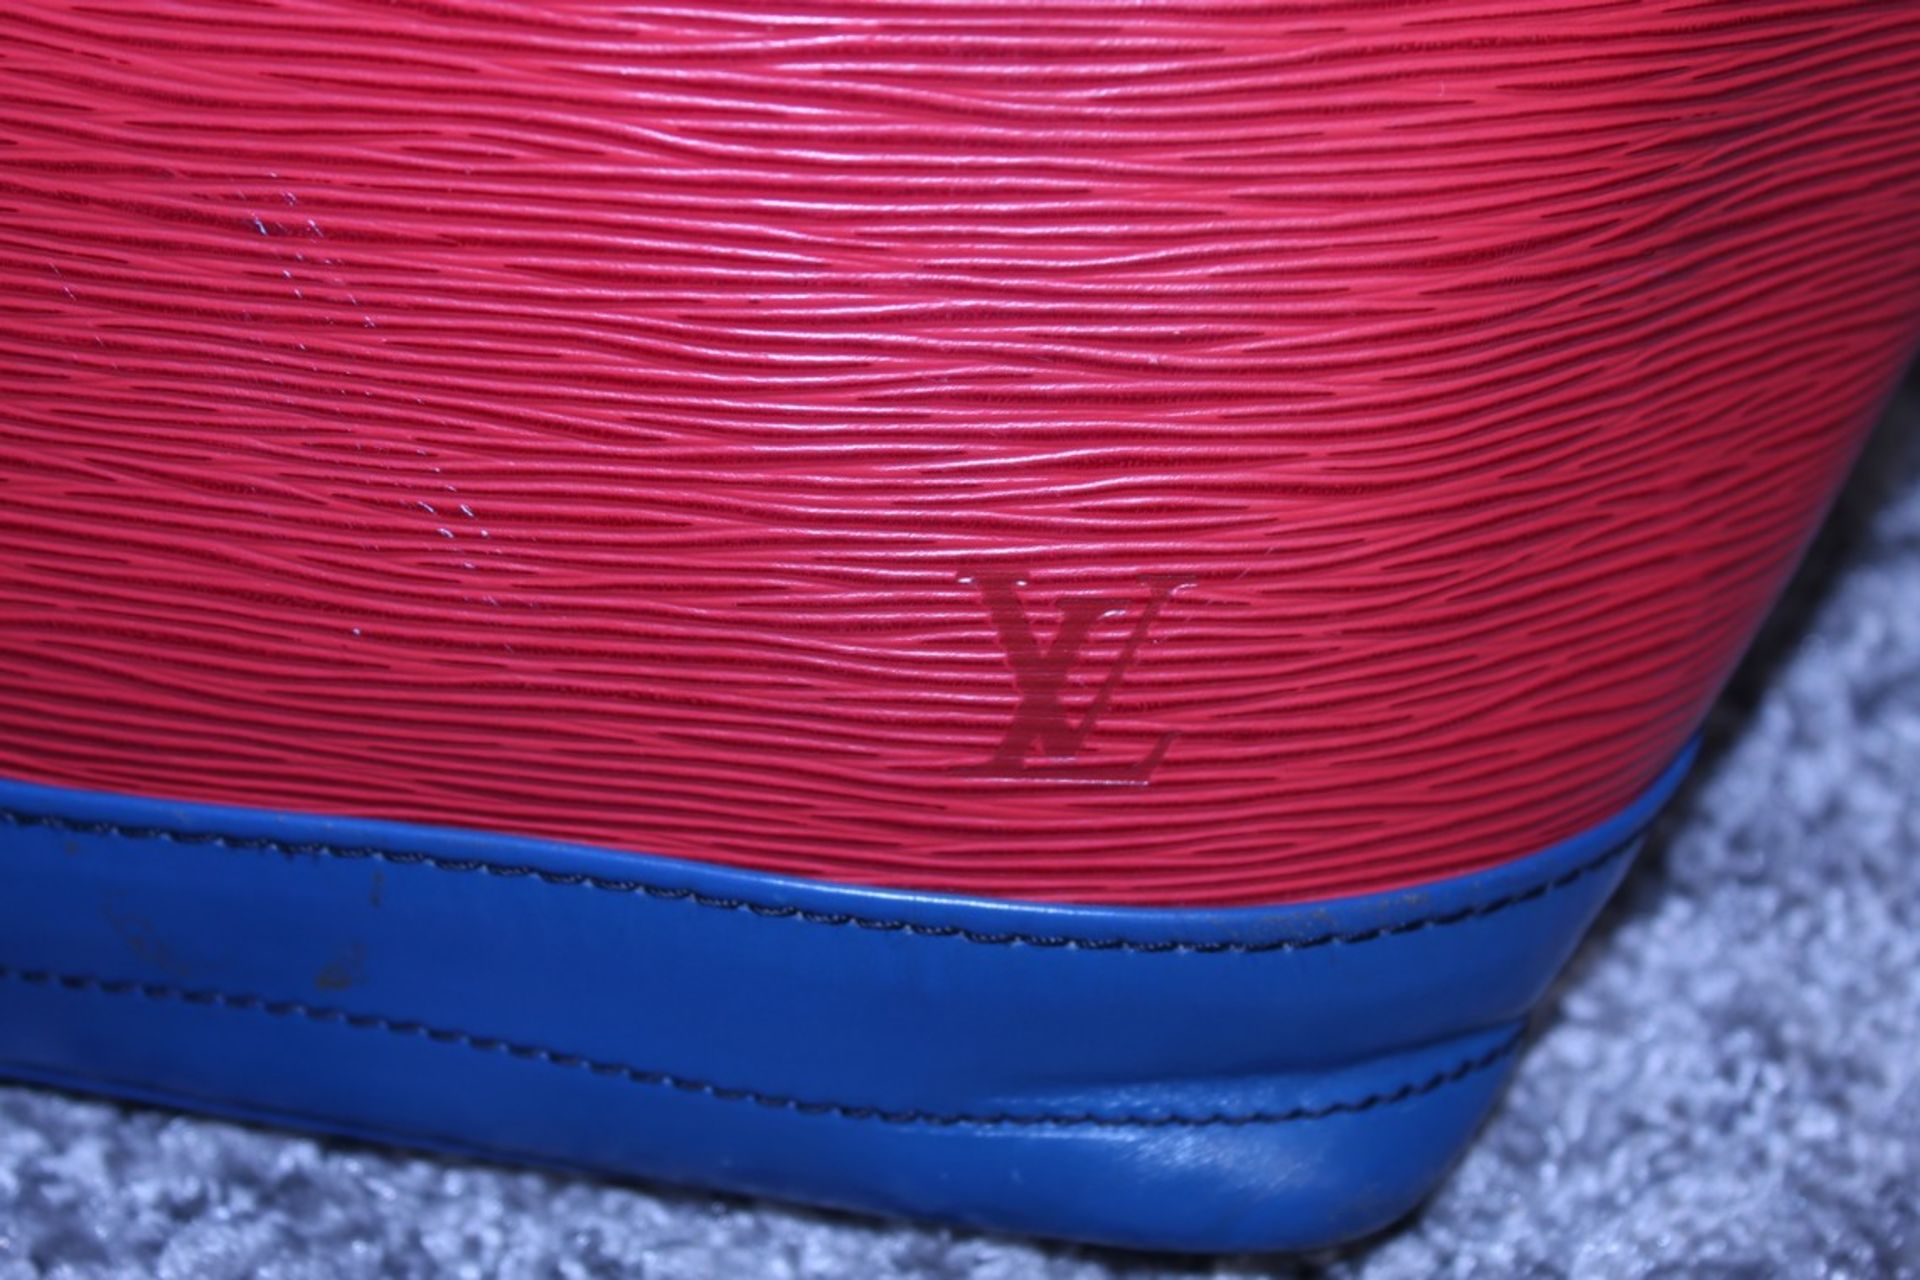 Rrp £1,200 Noe Tricolor Shoulder Bag - Image 3 of 4